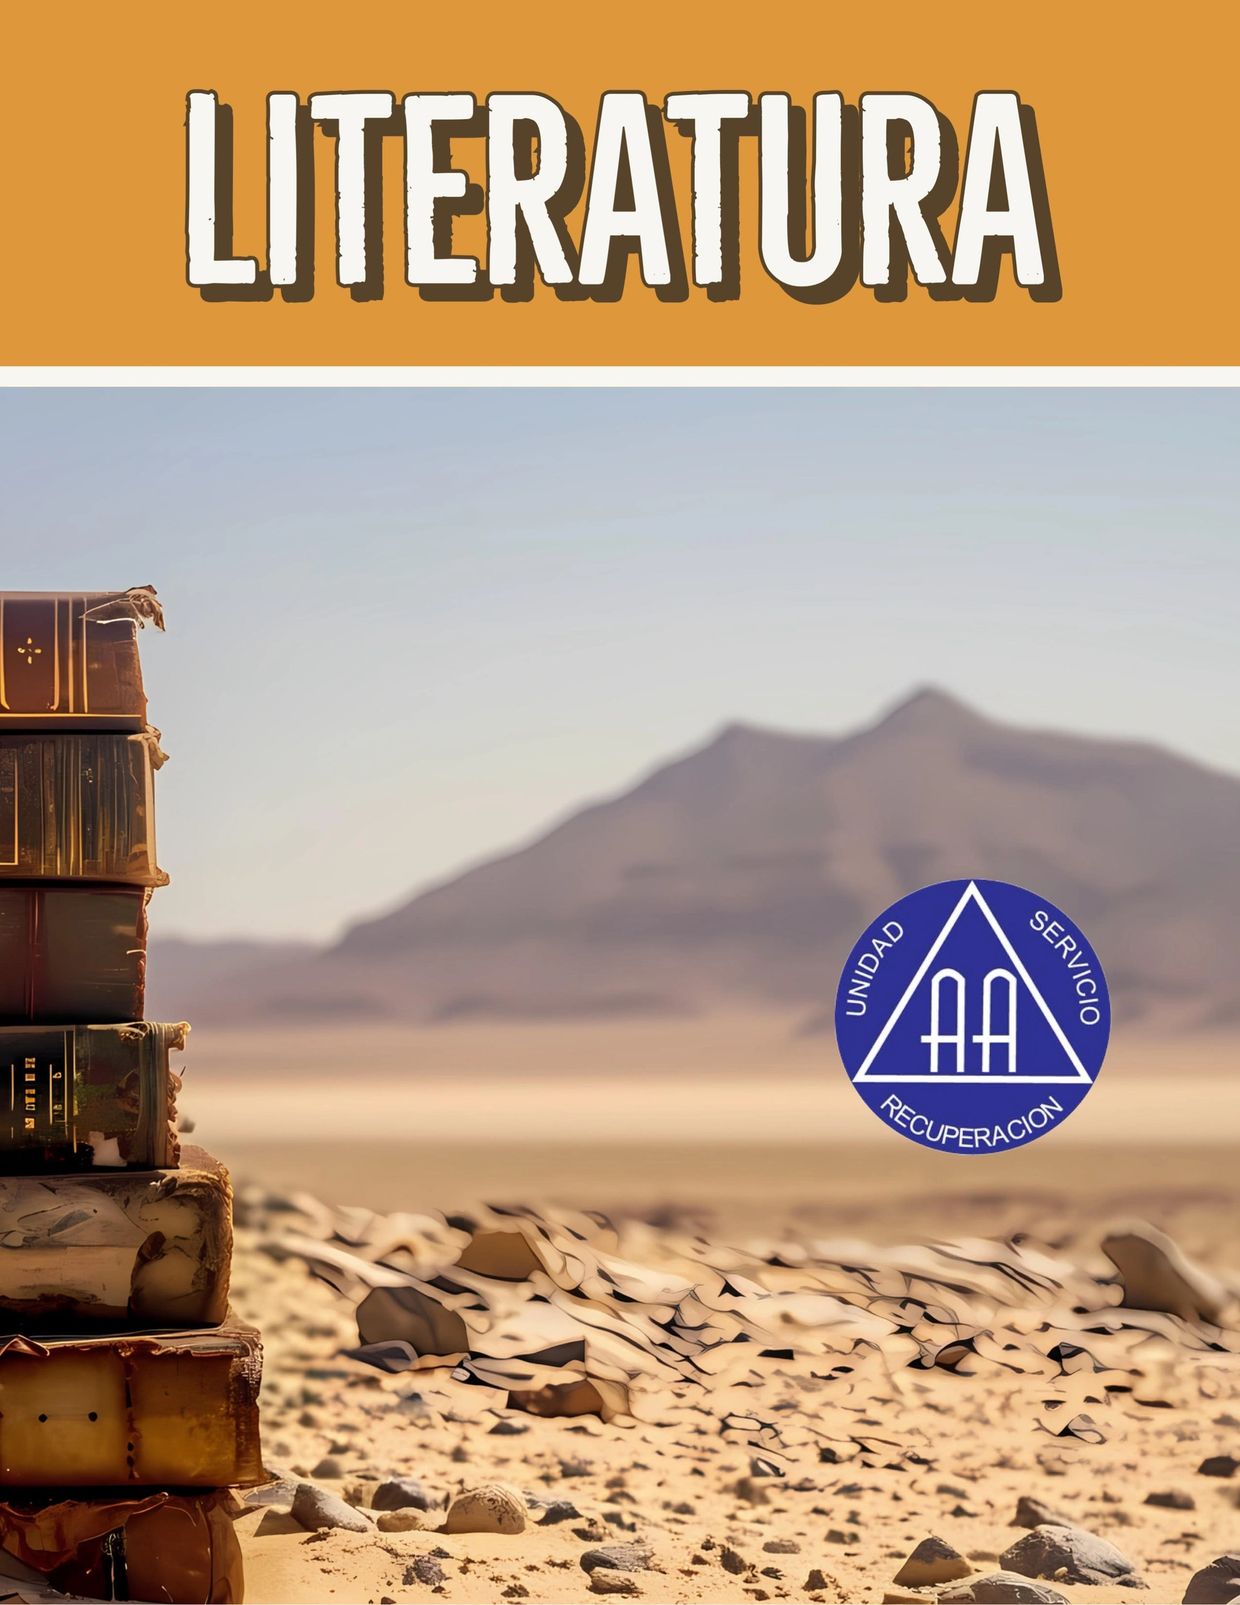 La literatura de Alcohólicos Anónimos (AA) en el sur de Arizona. Libros en el desierto. Logotipo AA